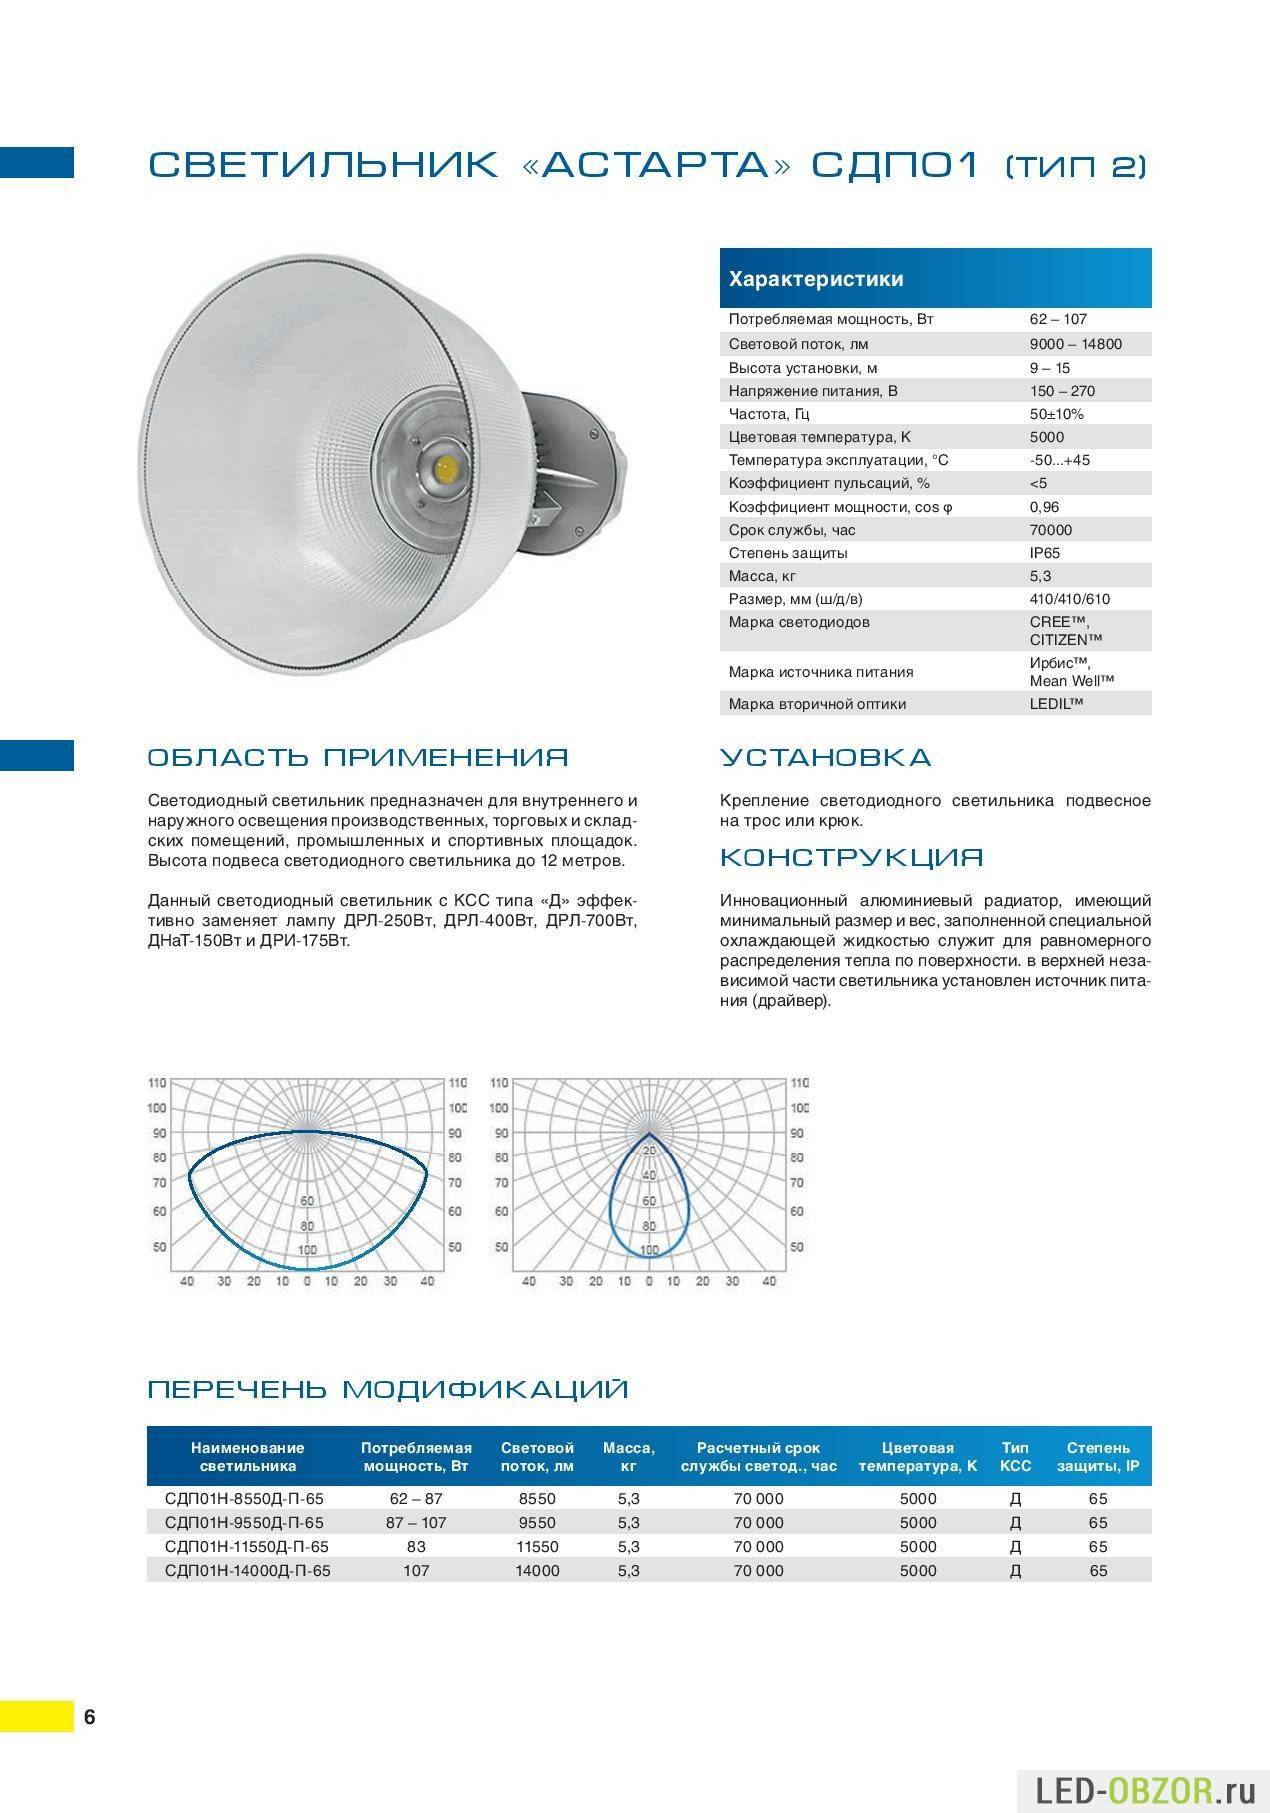 Монтаж светодиодных светильников: описание, технические характеристики